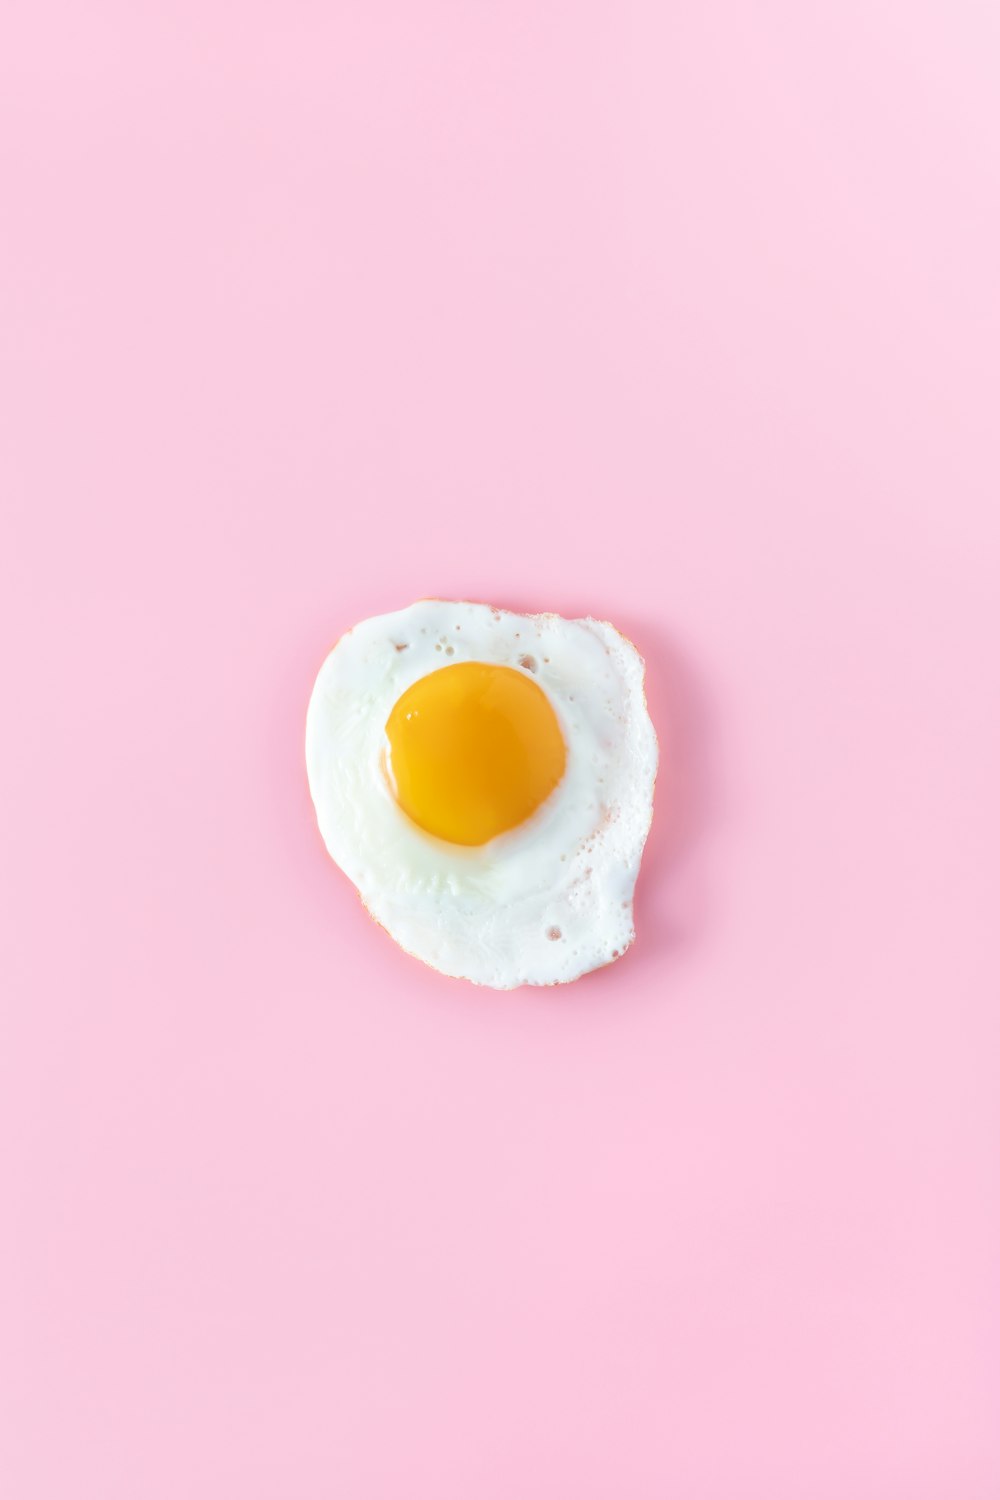 huevo con el lado soleado hacia arriba sobre una superficie rosada